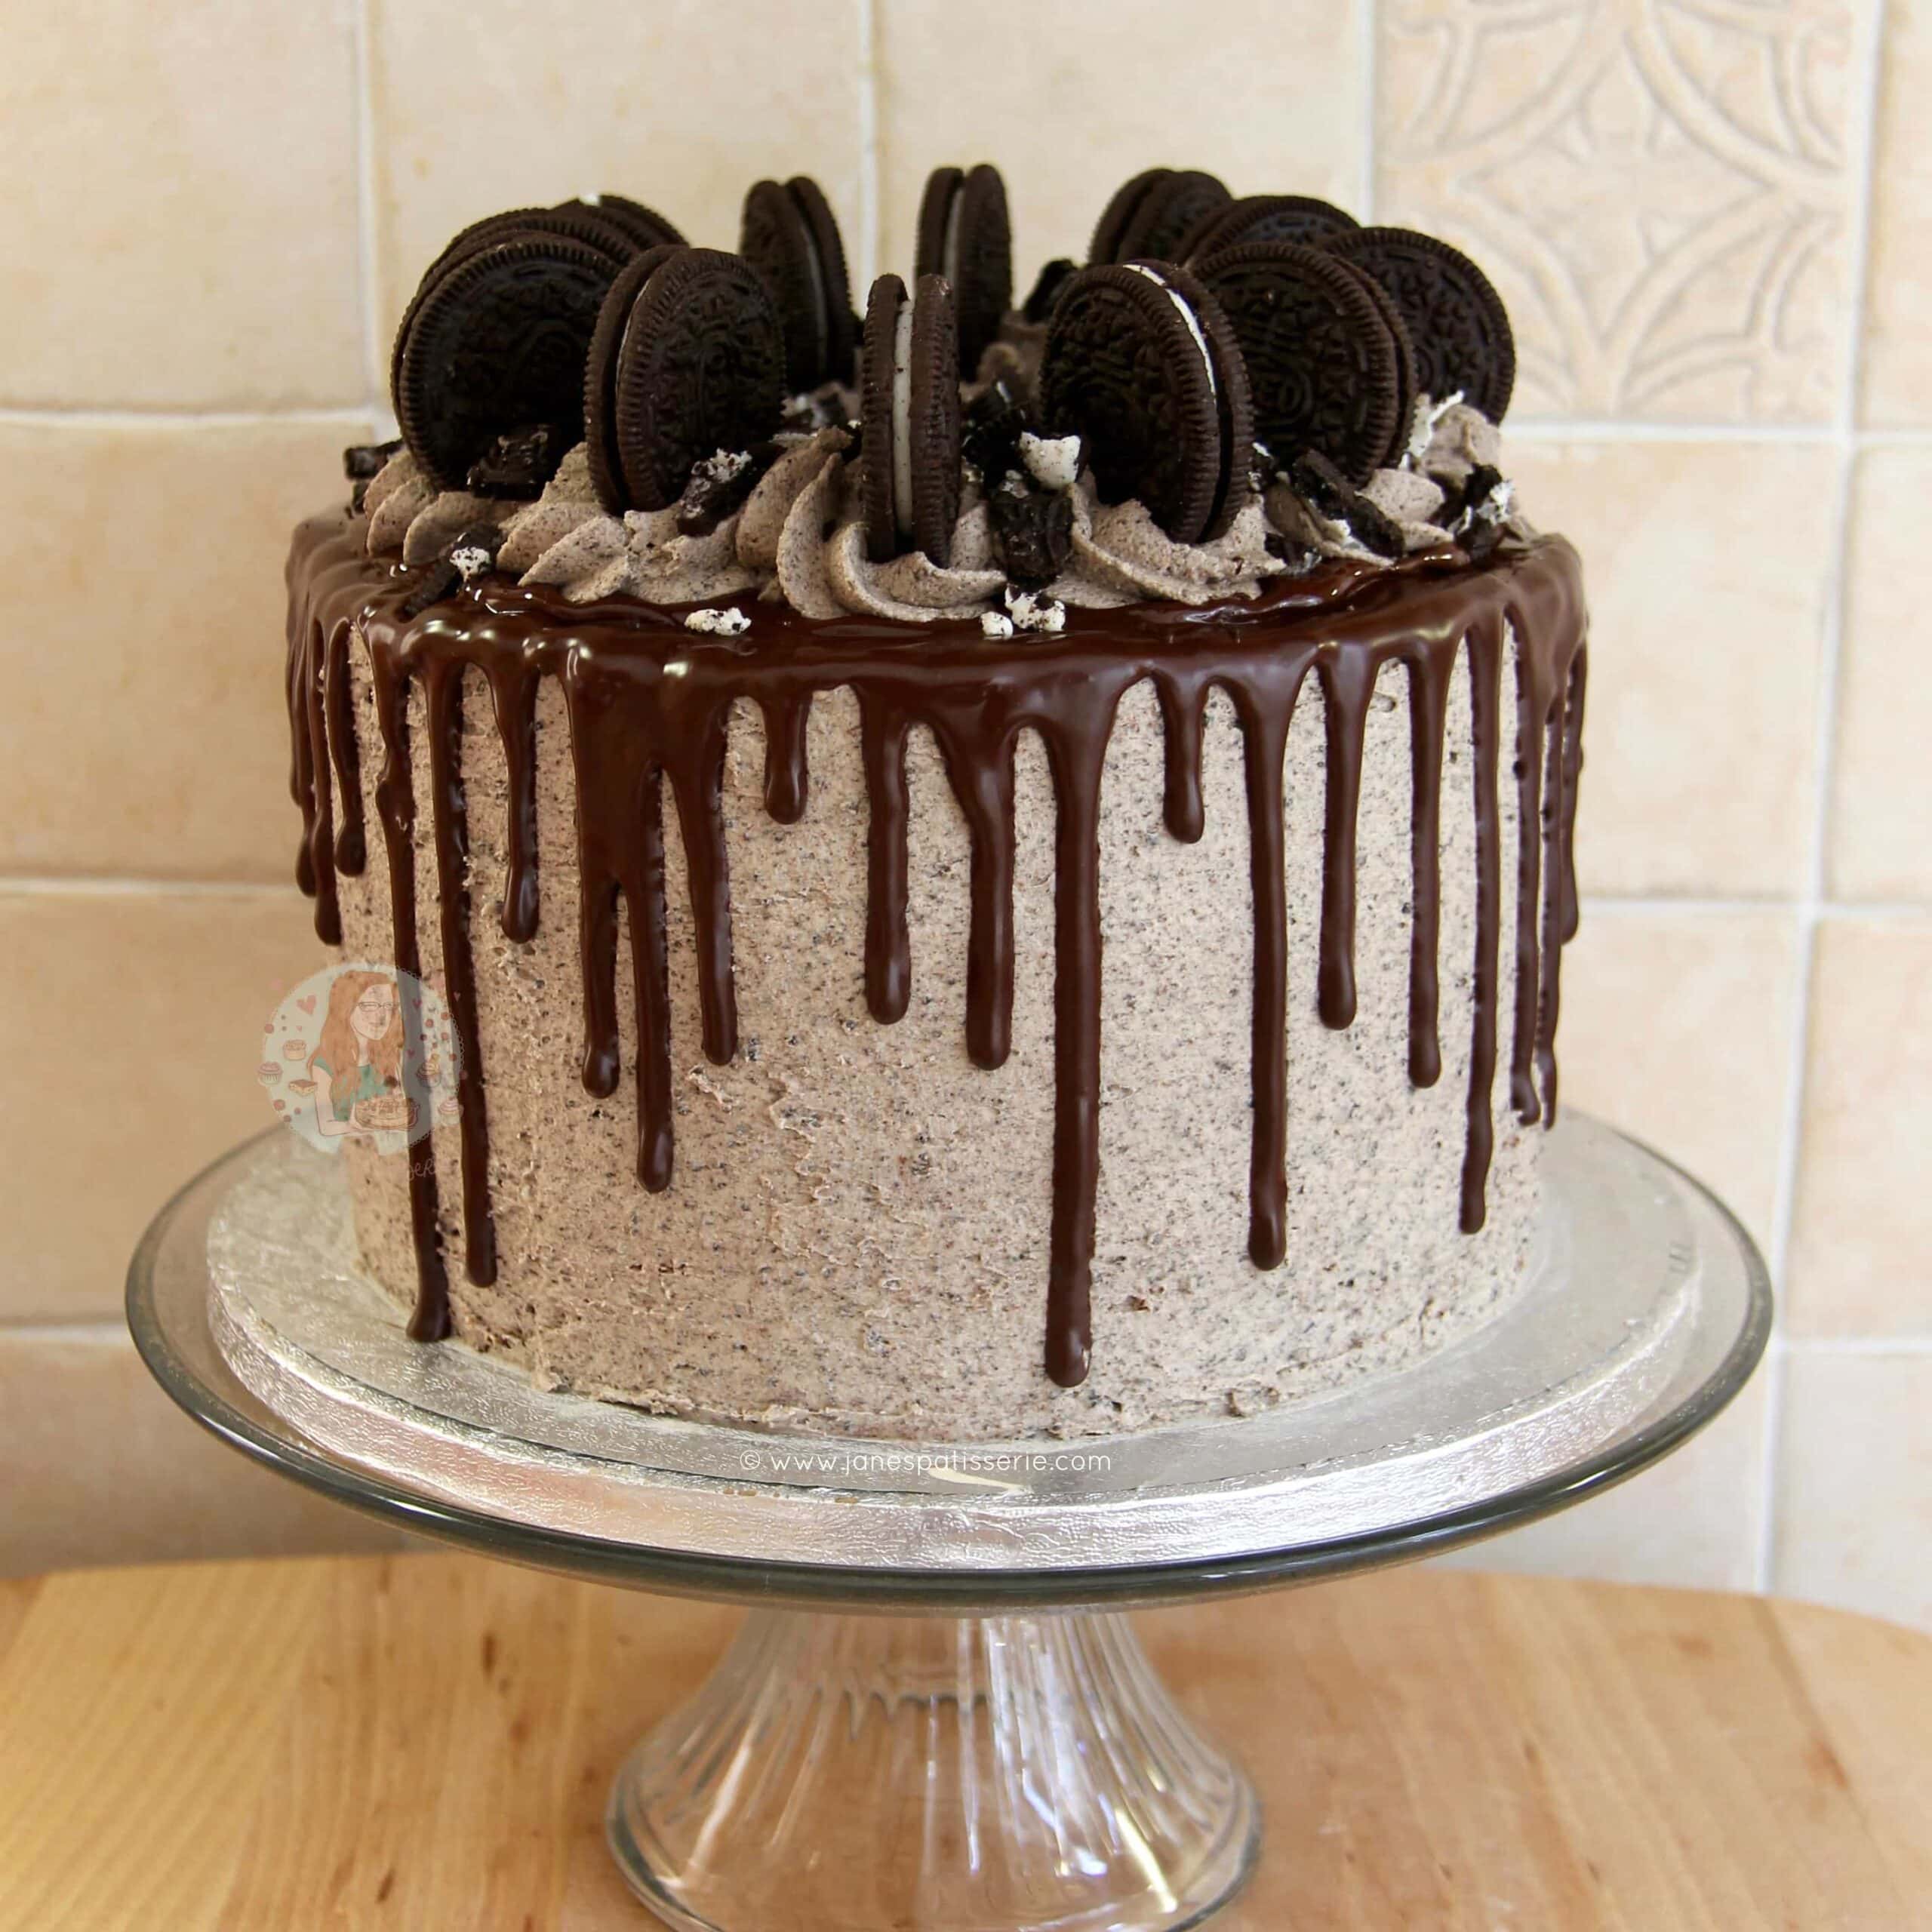 SWIRLY CARAMEL CHOCOLATE CAKE – SahniBakery